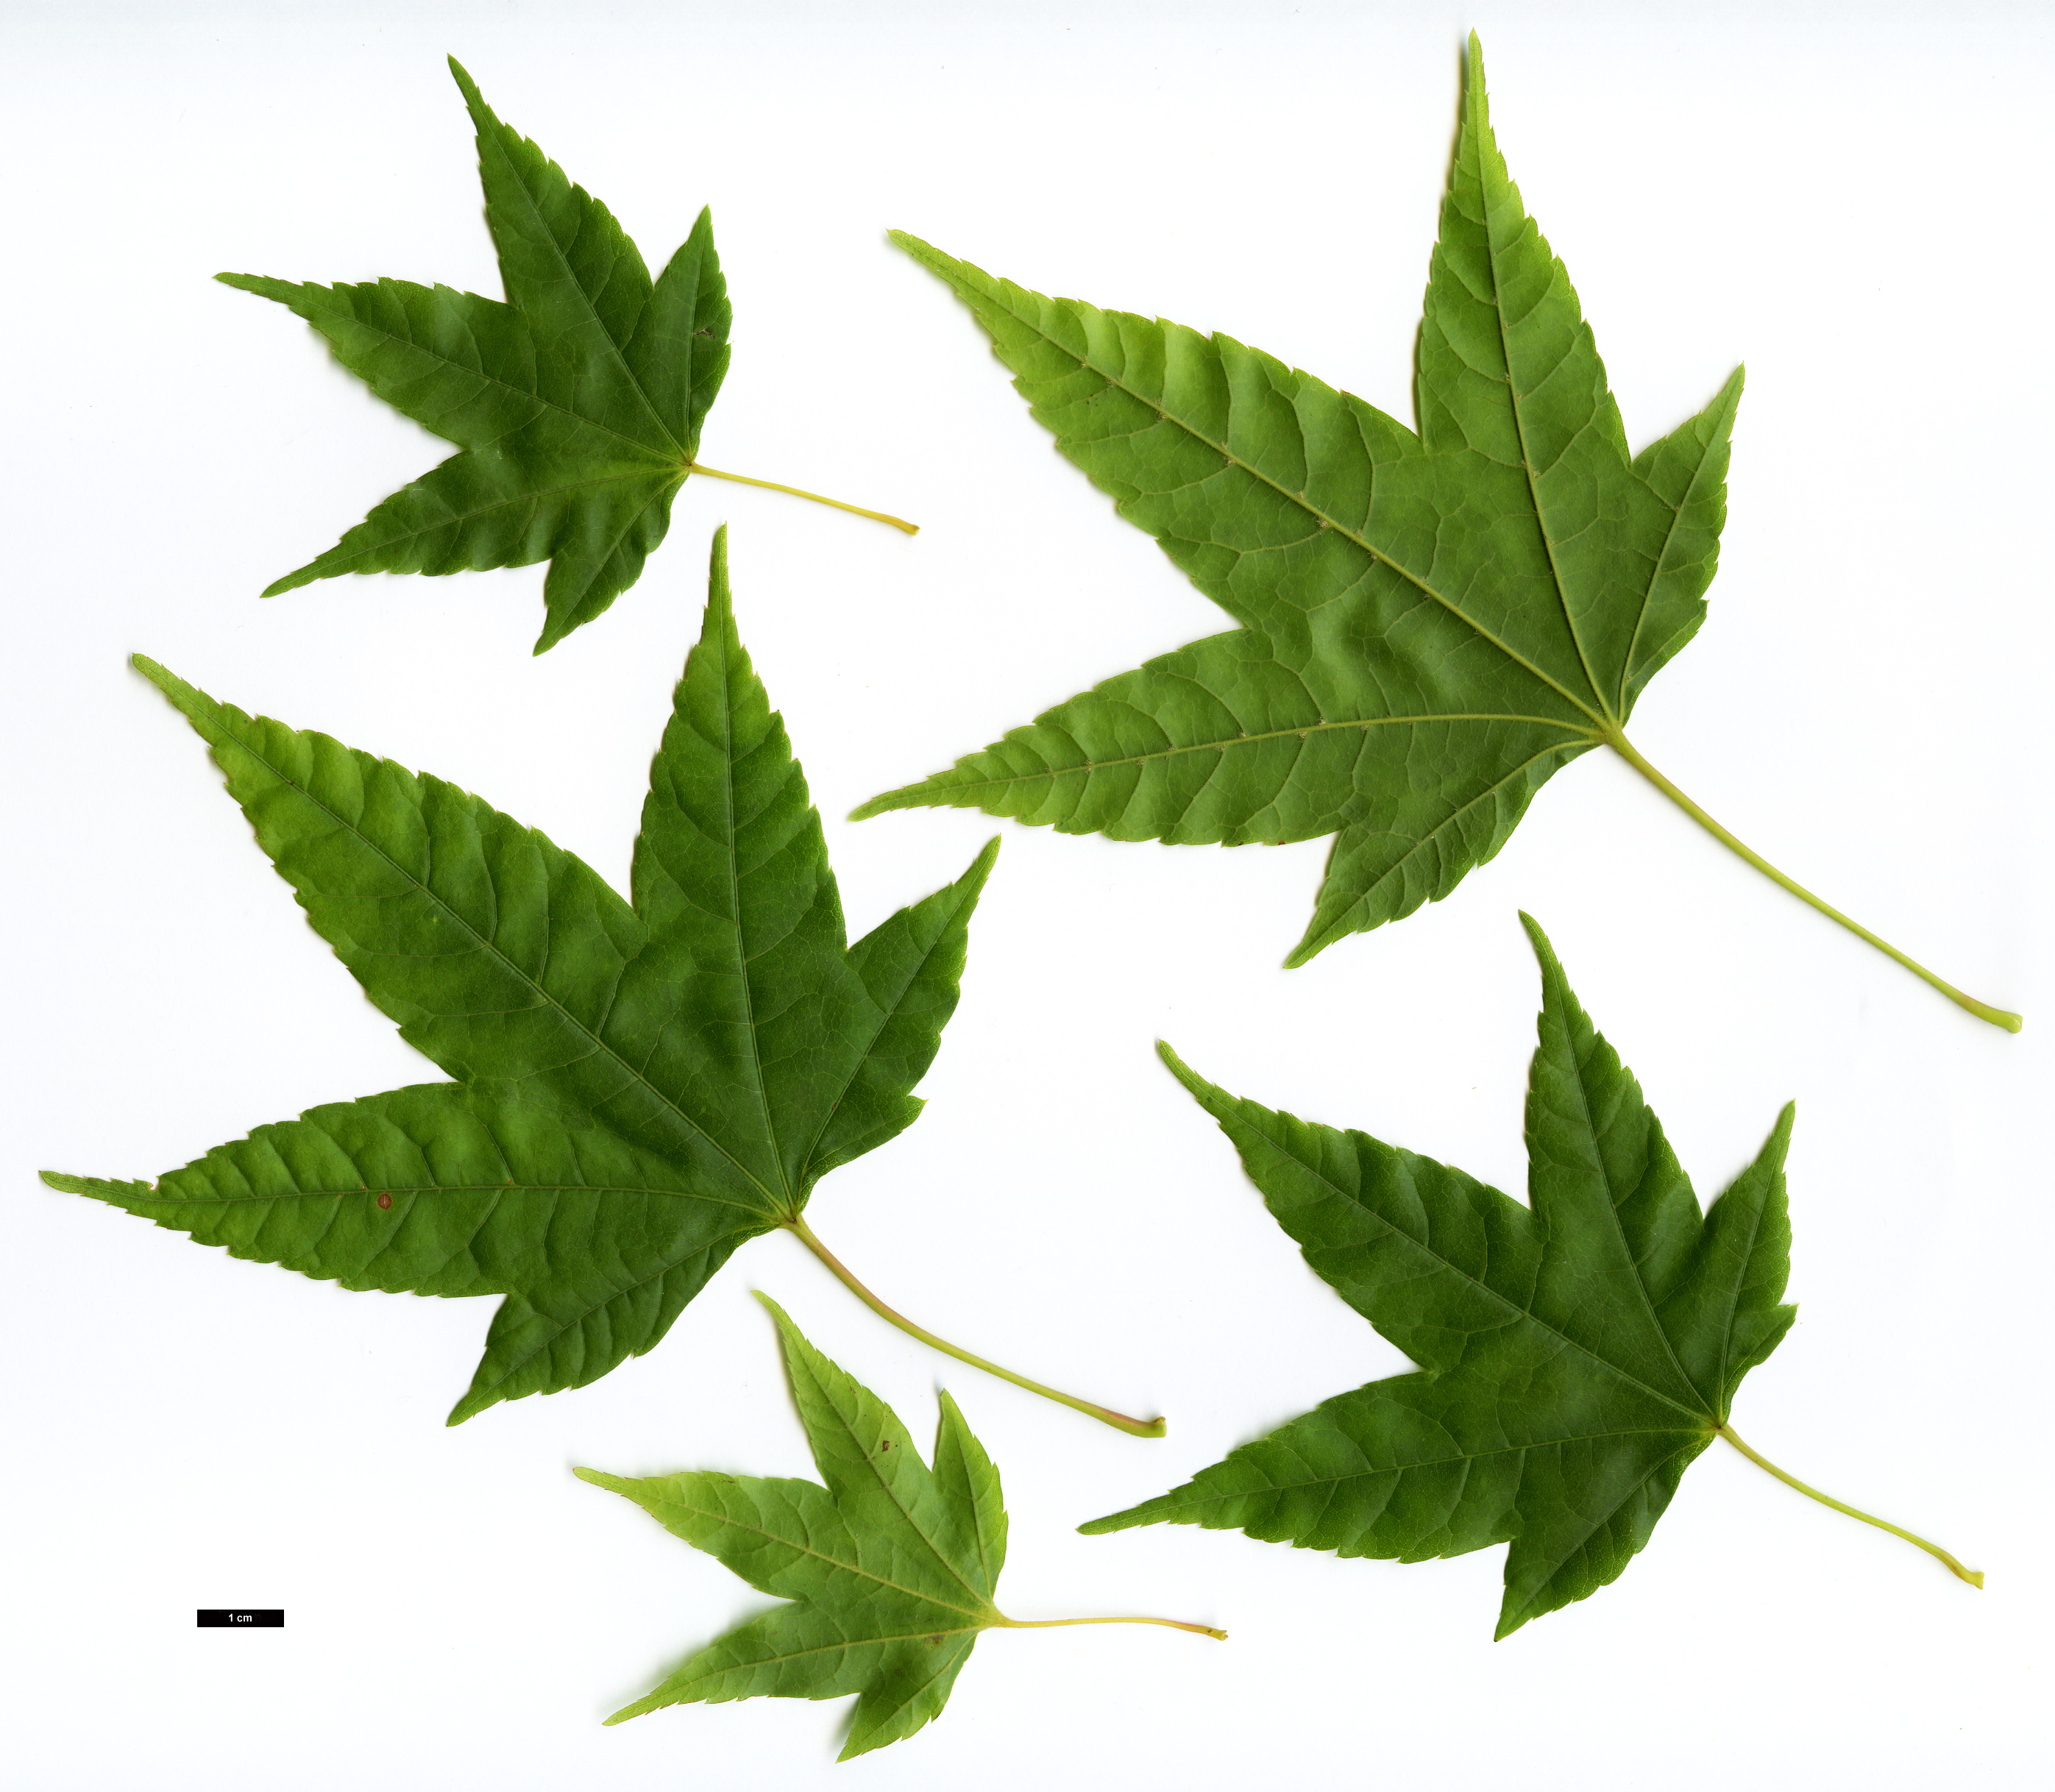 High resolution image: Family: Sapindaceae - Genus: Acer - Taxon: elegantulum